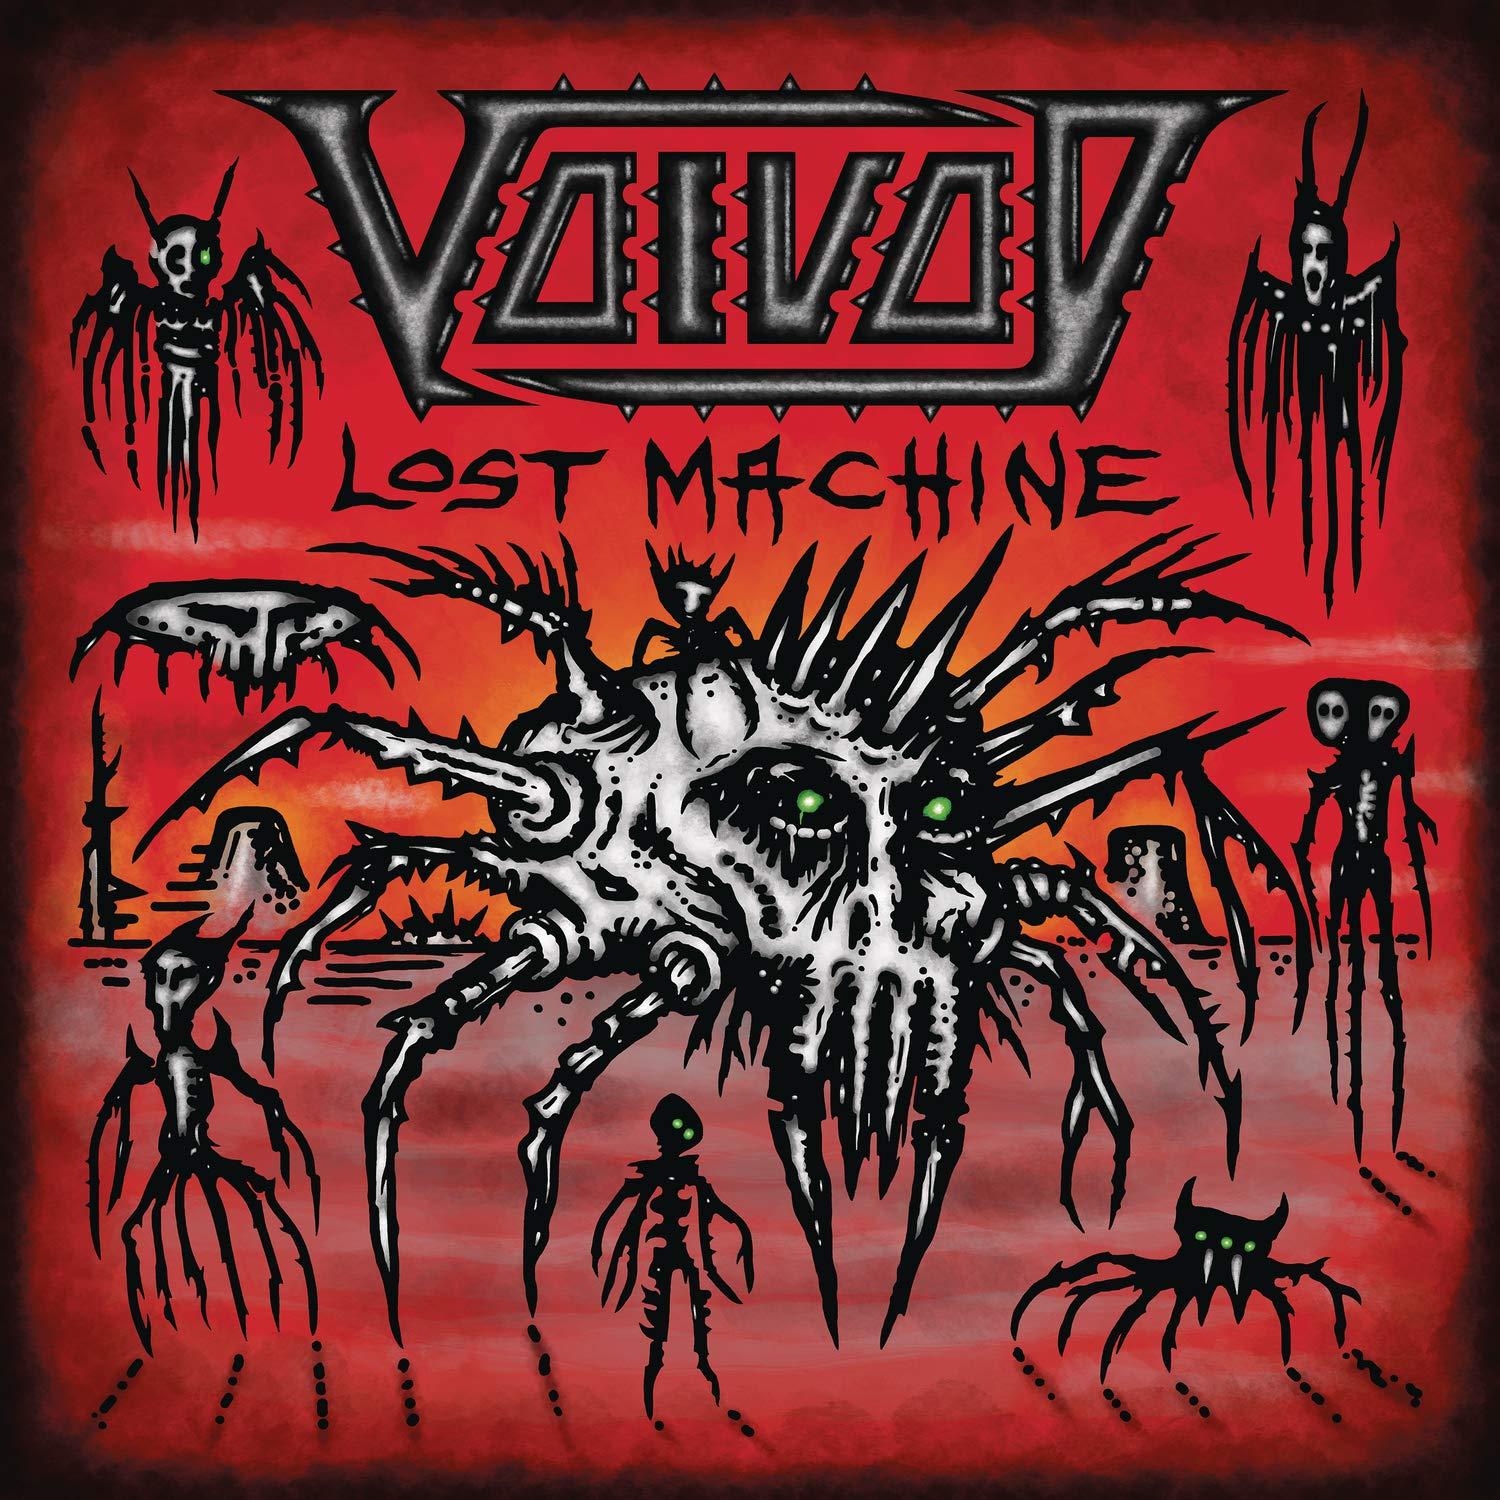 Lost machine voivod